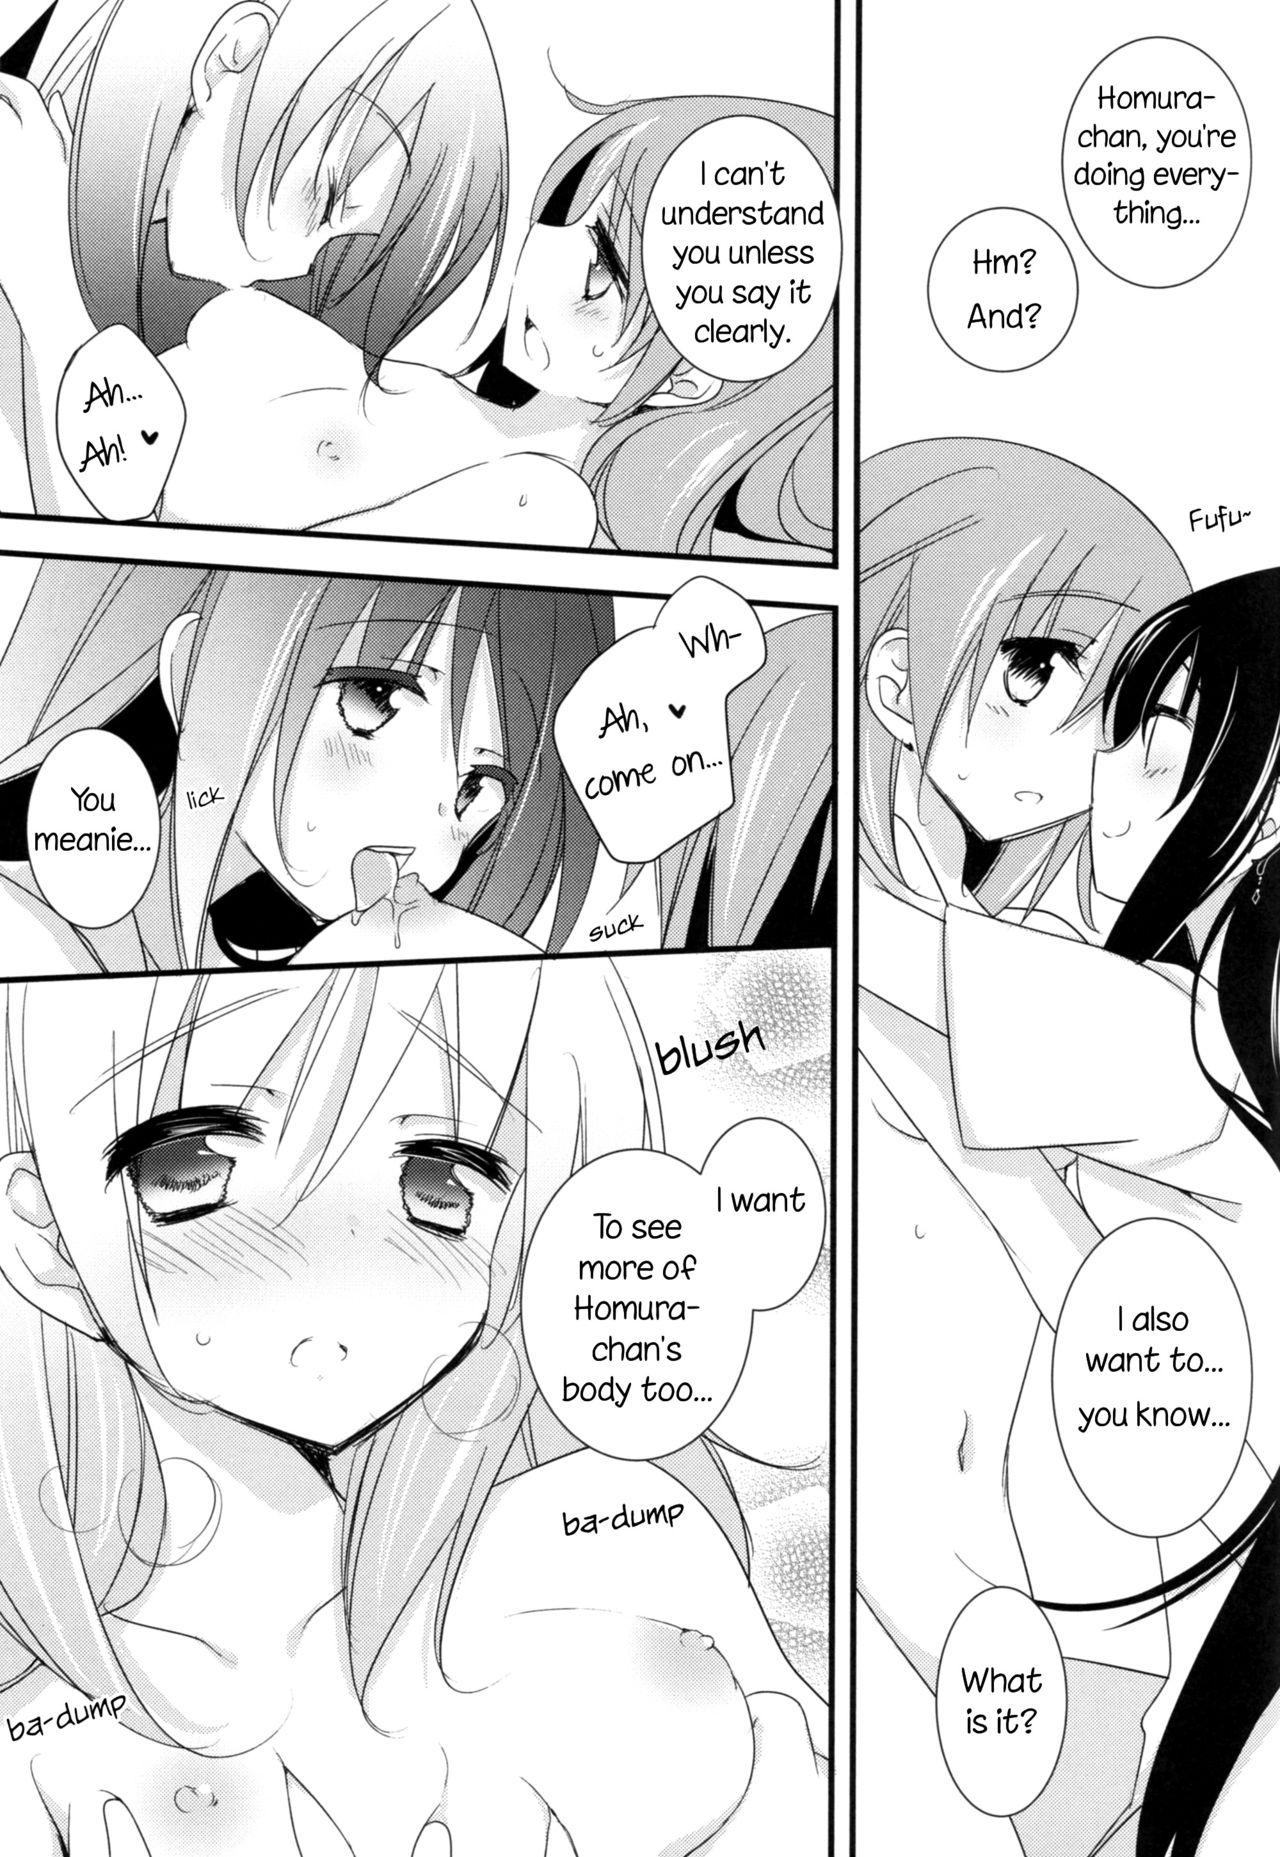 Uncensored Watashi no Kanojo wa Itsudemo Tokubetsu ni Sugoku Sugoku Kawaii | My Girlfriend is Always Super-Duper Cute - Puella magi madoka magica Youth Porn - Page 10